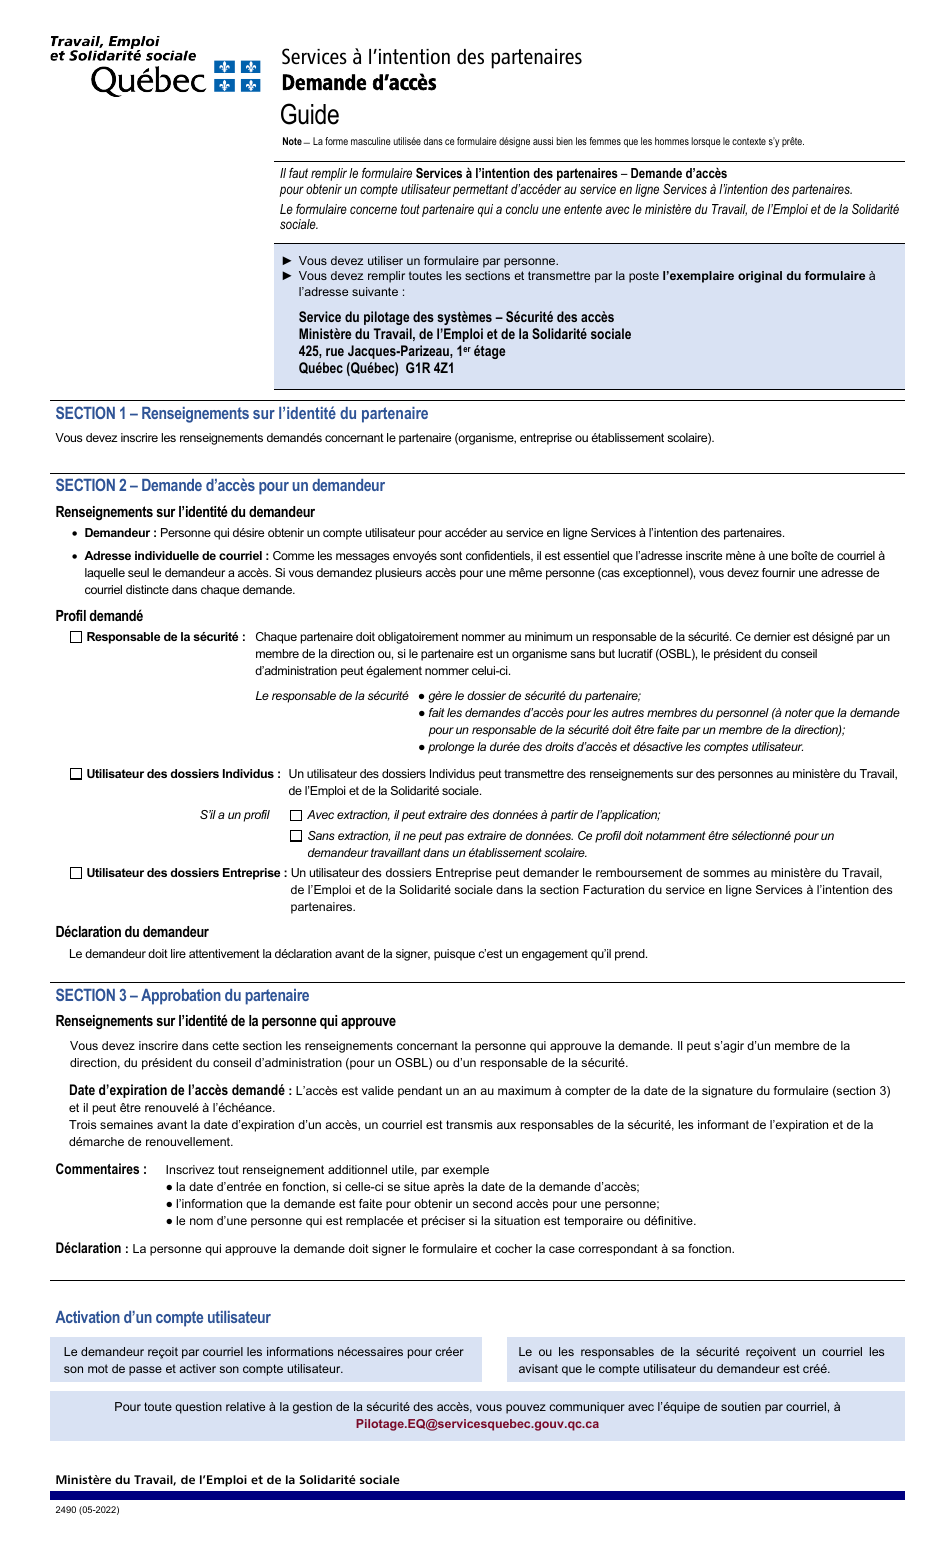 Forme 2490 Services a Lintention DES Partenaires Demande Dacces - Quebec, Canada (French), Page 1